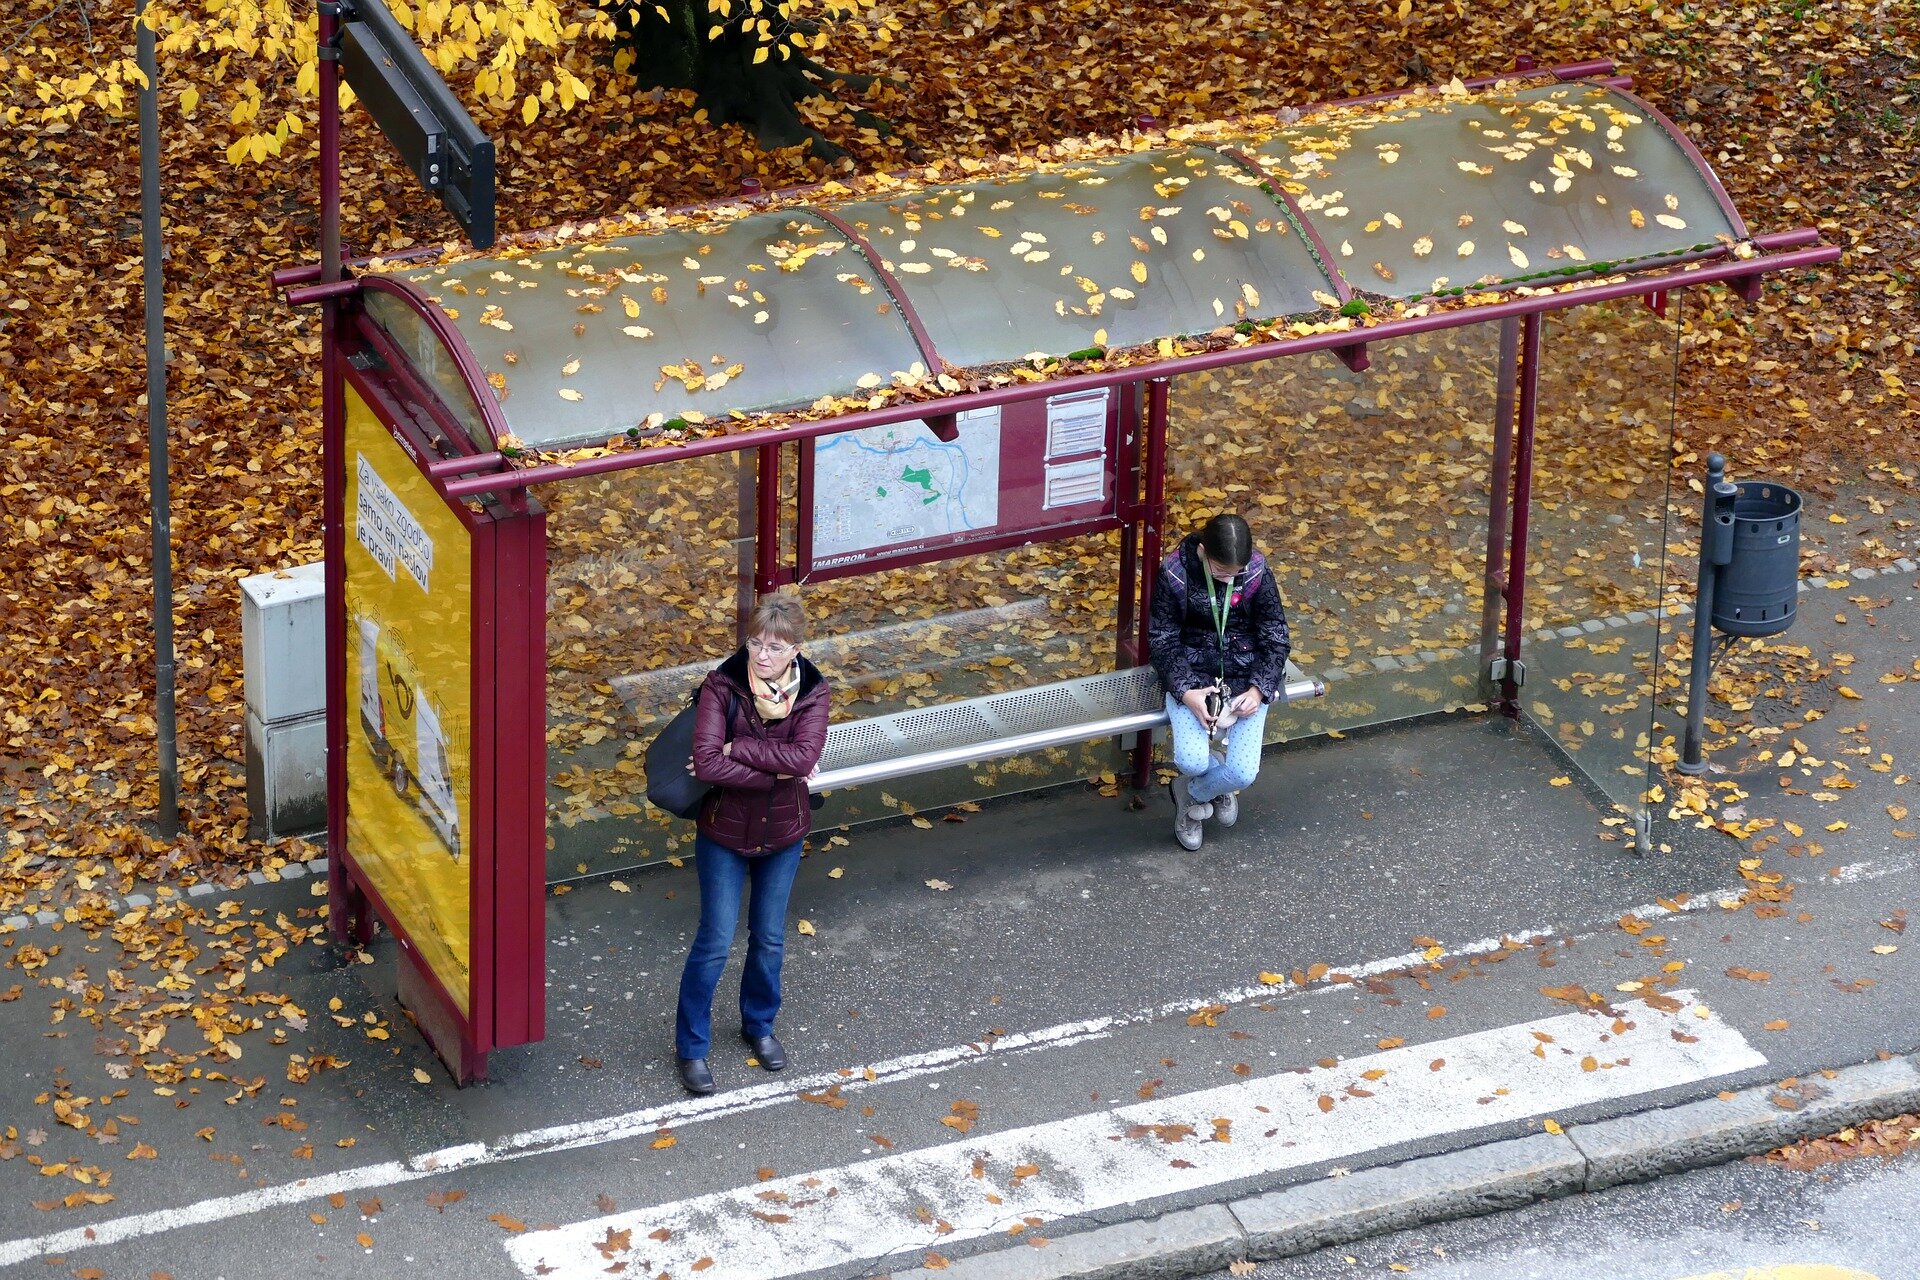 Аня ждет автобус на остановке изобразите. Автобусная остановка. Автоюбусная остановка. Красивые остановки. Люди на остановке осень.